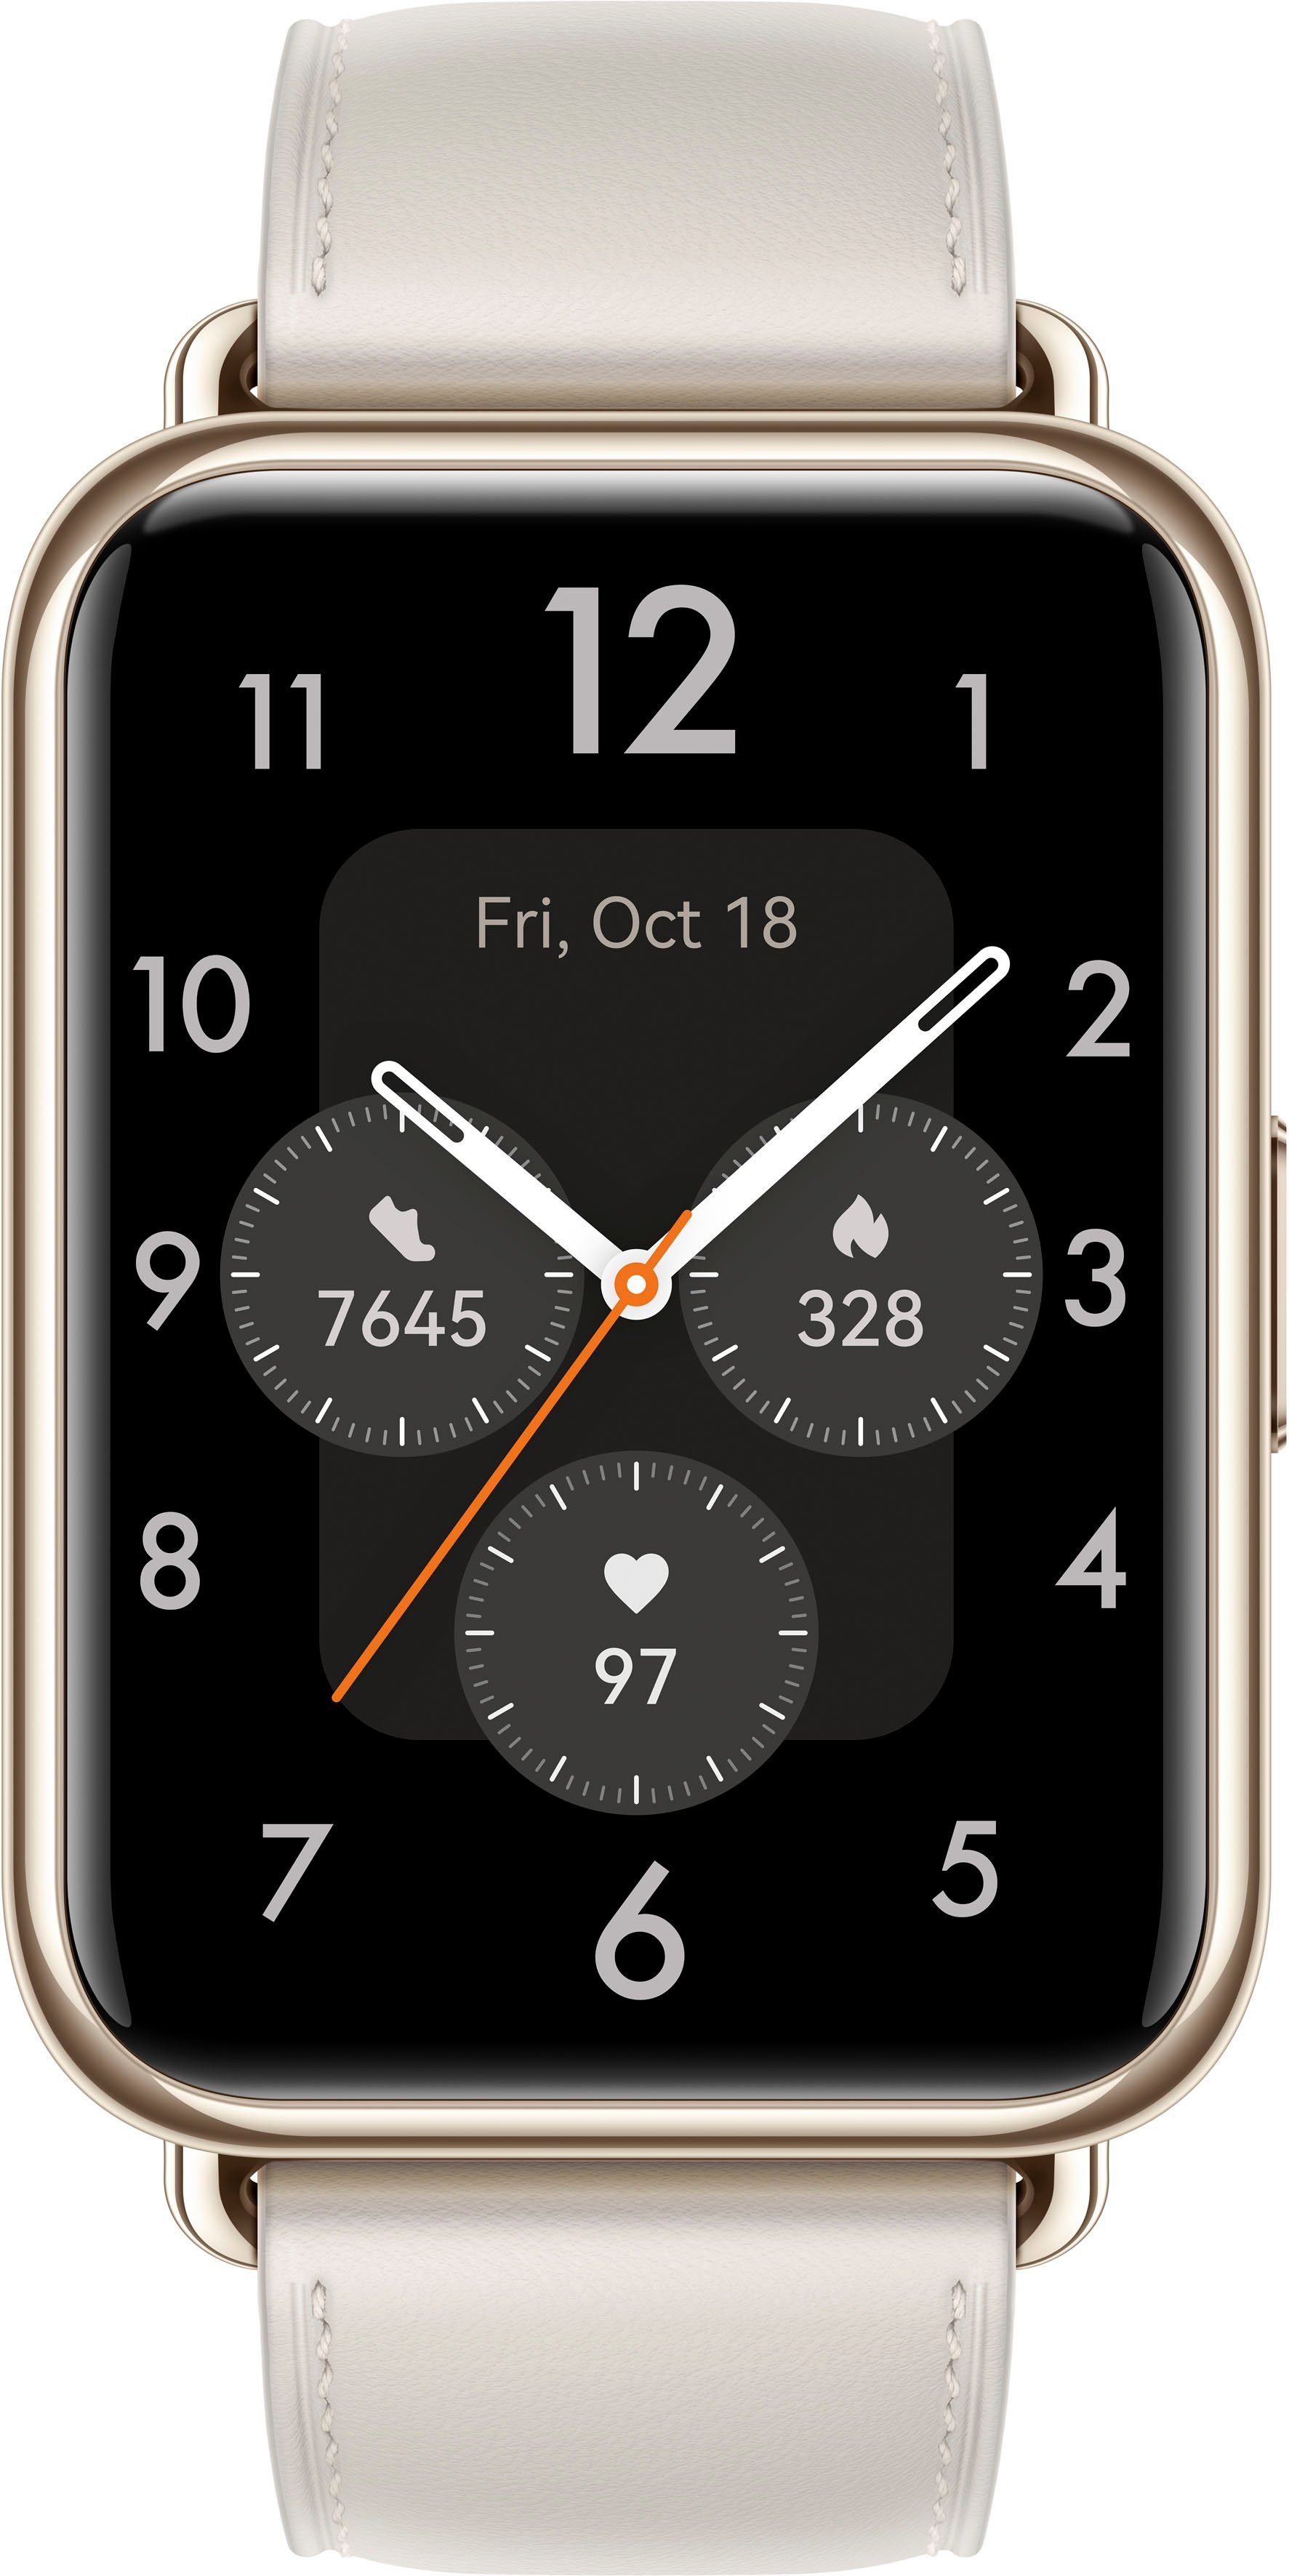 weiß Fit Herstellergarantie 3 Watch Huawei Smartwatch, 2 Jahre